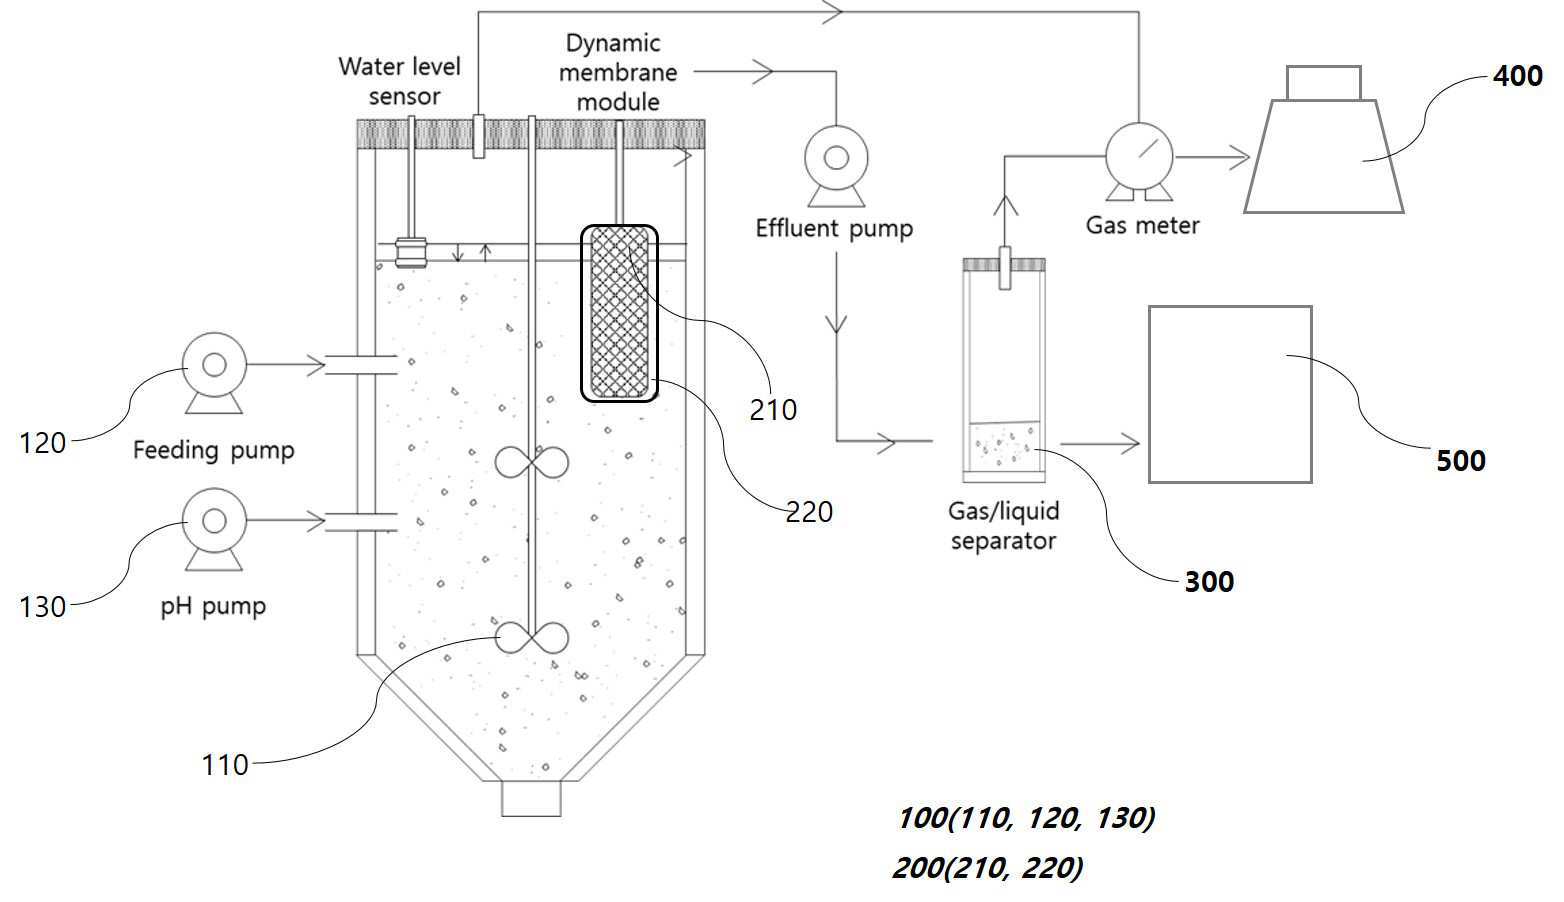 반응조 내부에 다이나믹 생물막을 포함하는 바이오수소 제조장치 및 이를 이용한 바이오수소 제조방법 대표 이미지